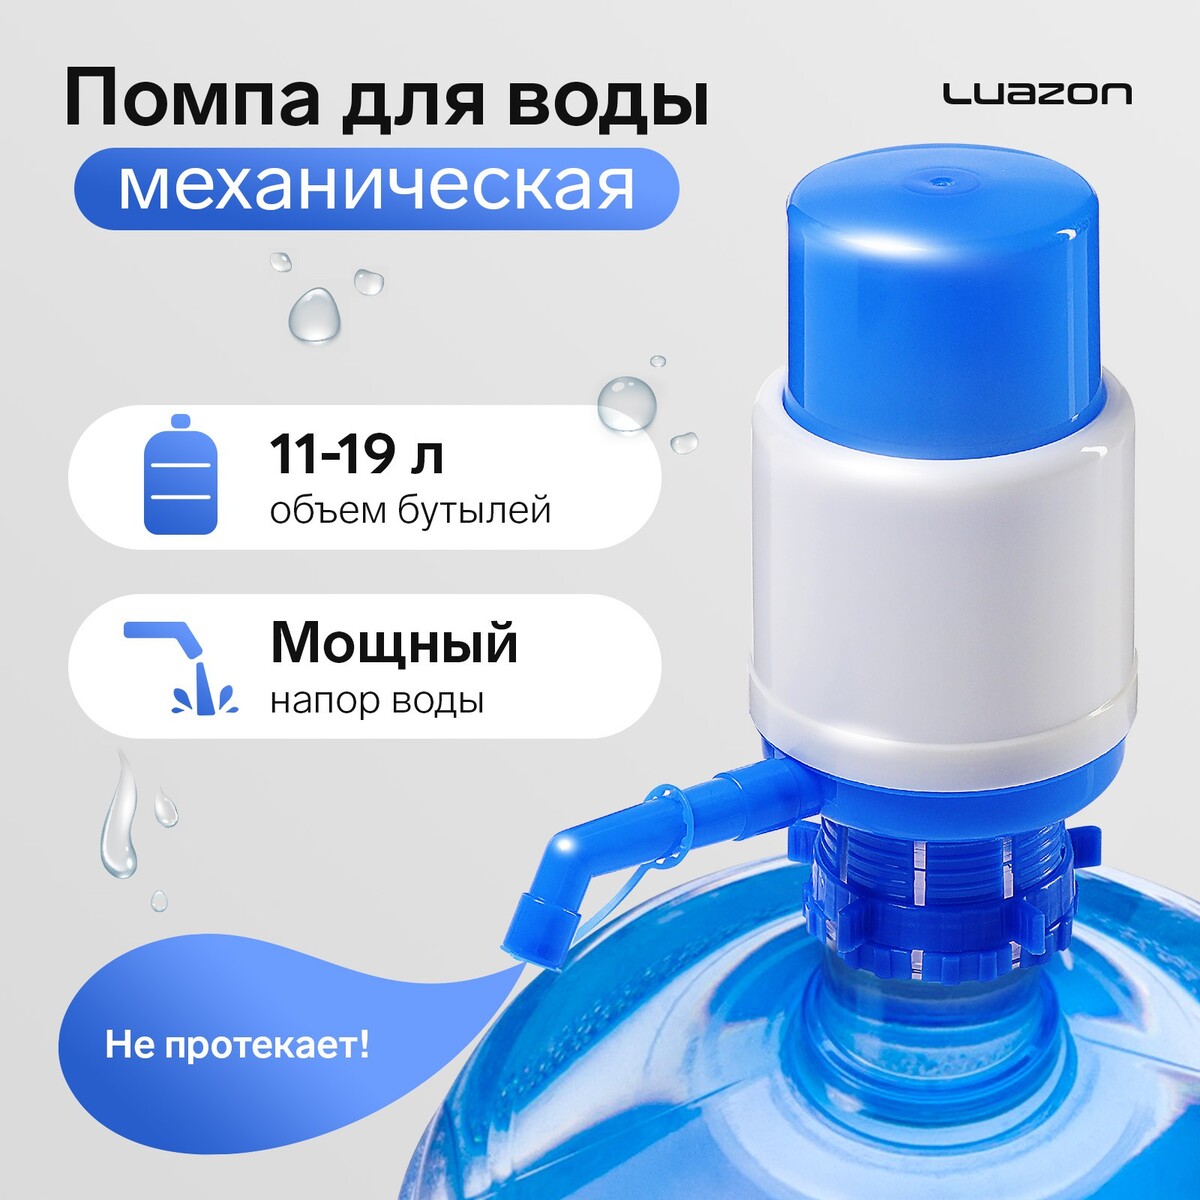 Помпа для воды luazon, механическая, средняя, под бутыль от 11 до 19 л, голубая помпа для воды luazon механическая средняя под бутыль от 11 до 19 л голубая